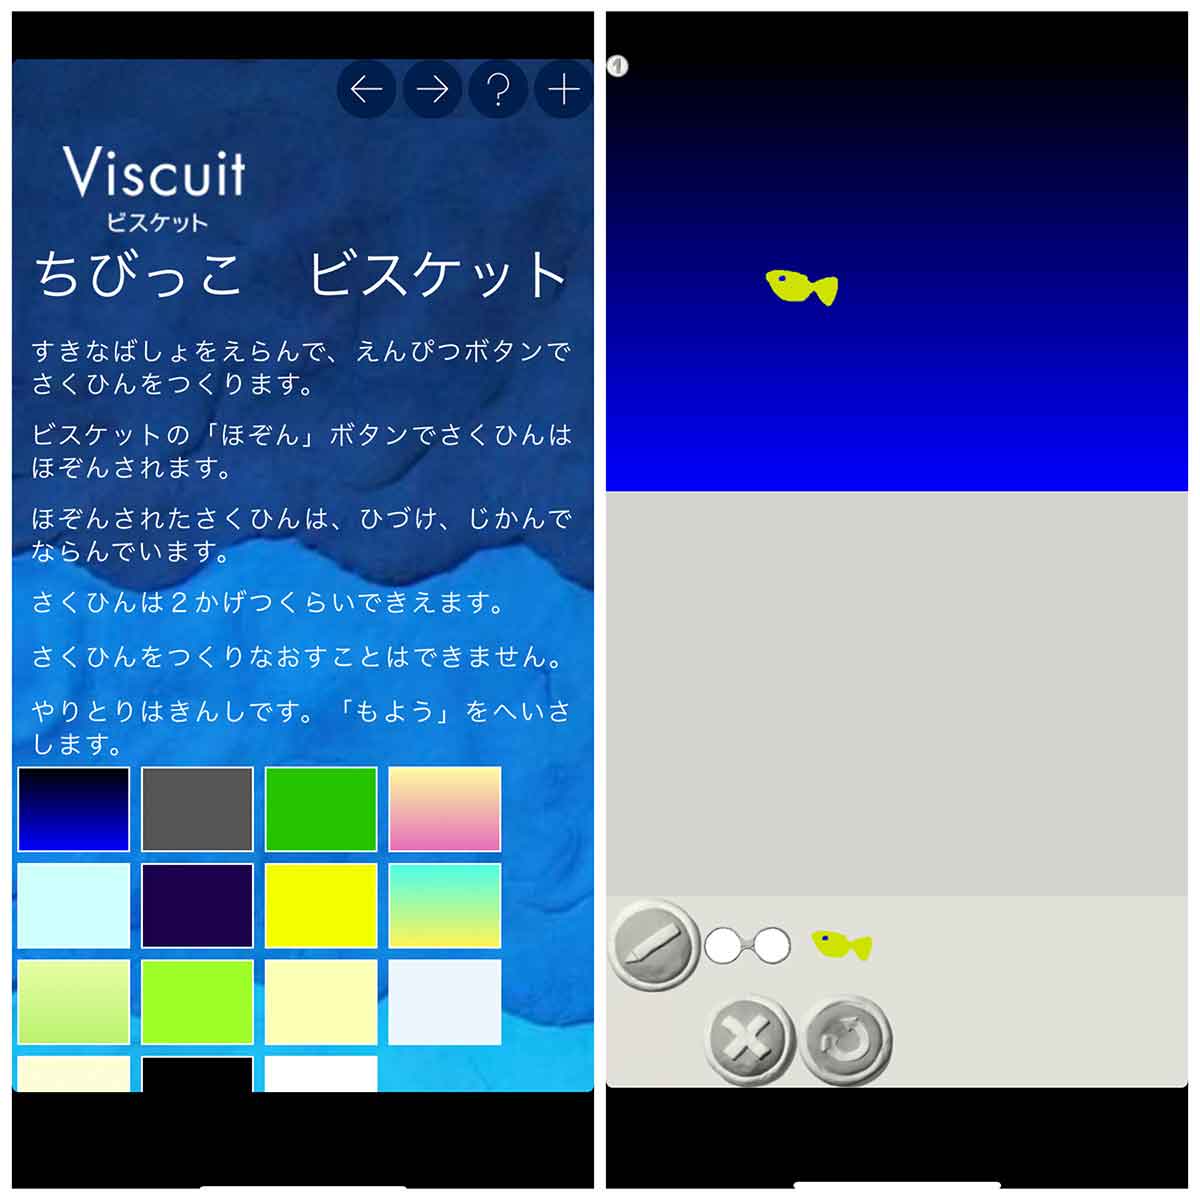 【小学生向け・プログラミング】viscuit |子どもも楽しめるビジュアルプログラミング言語アプリ